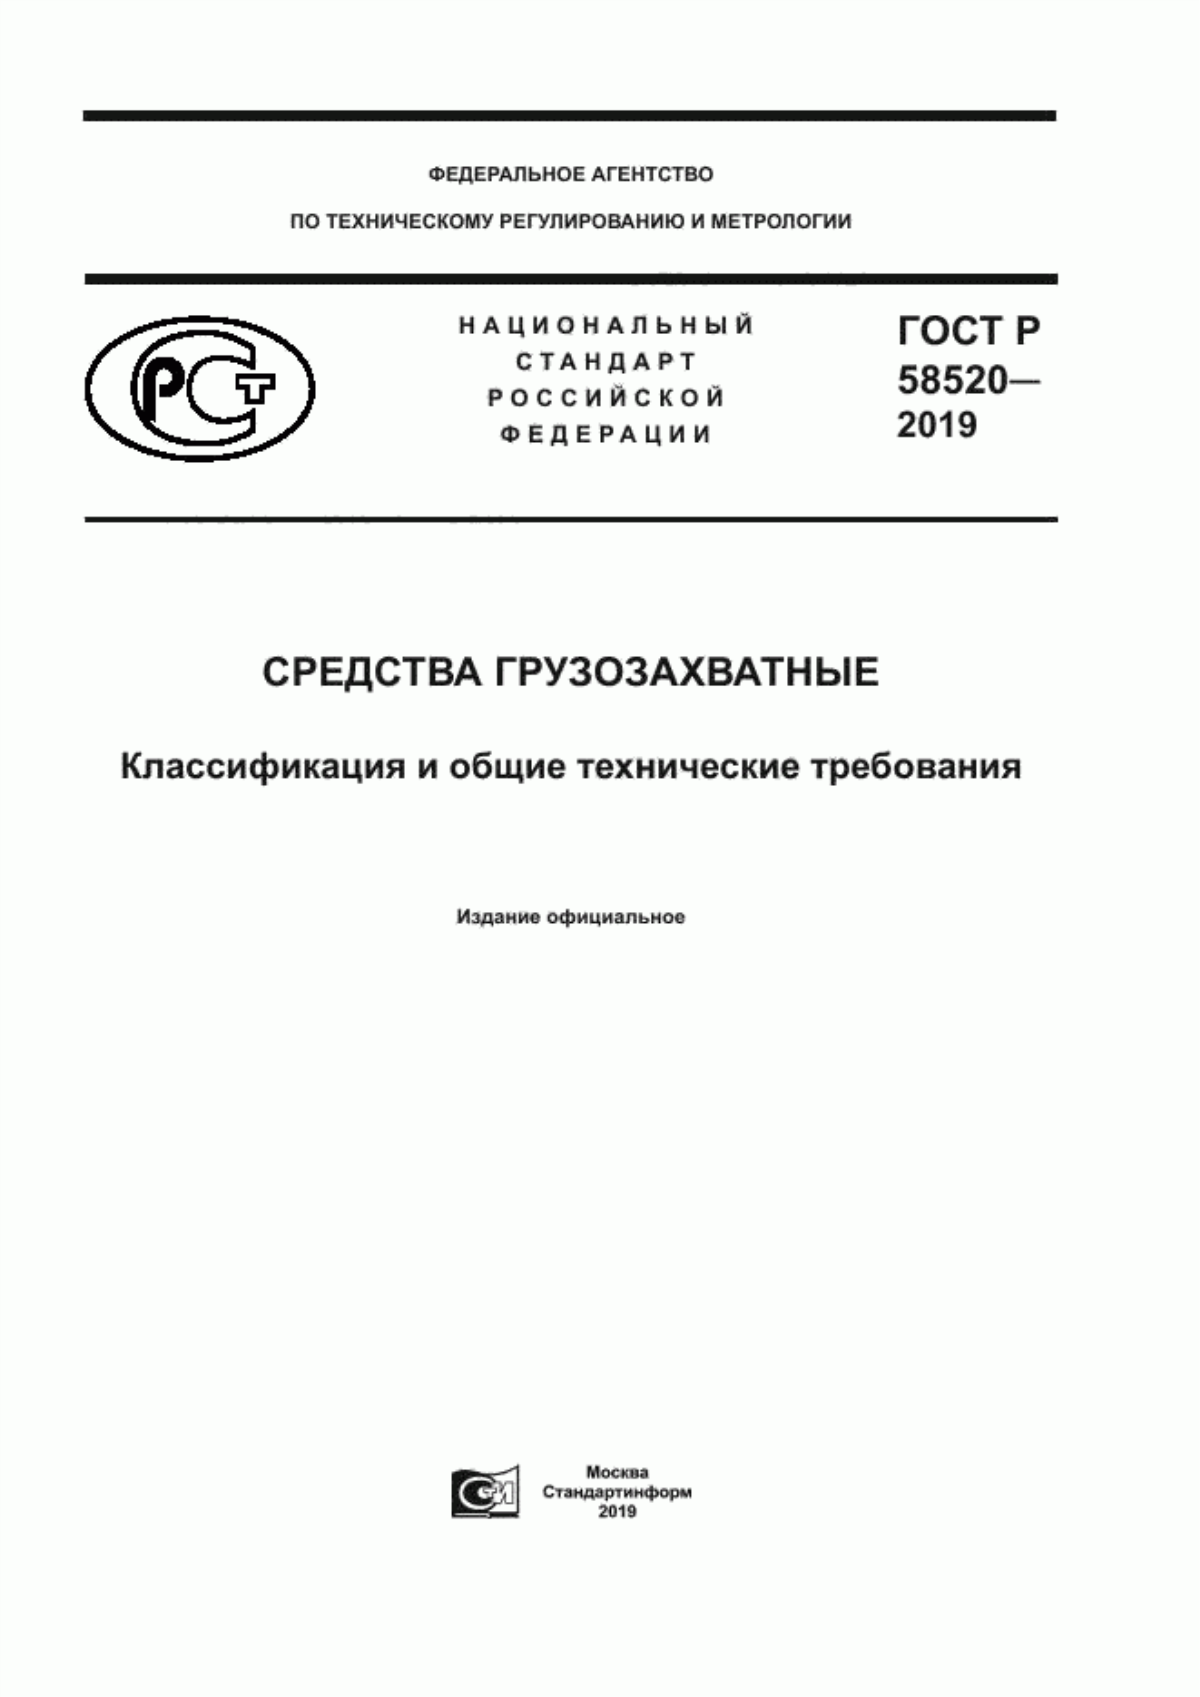 ГОСТ Р 58520-2019 Средства грузозахватные. Классификация и общие технические требования